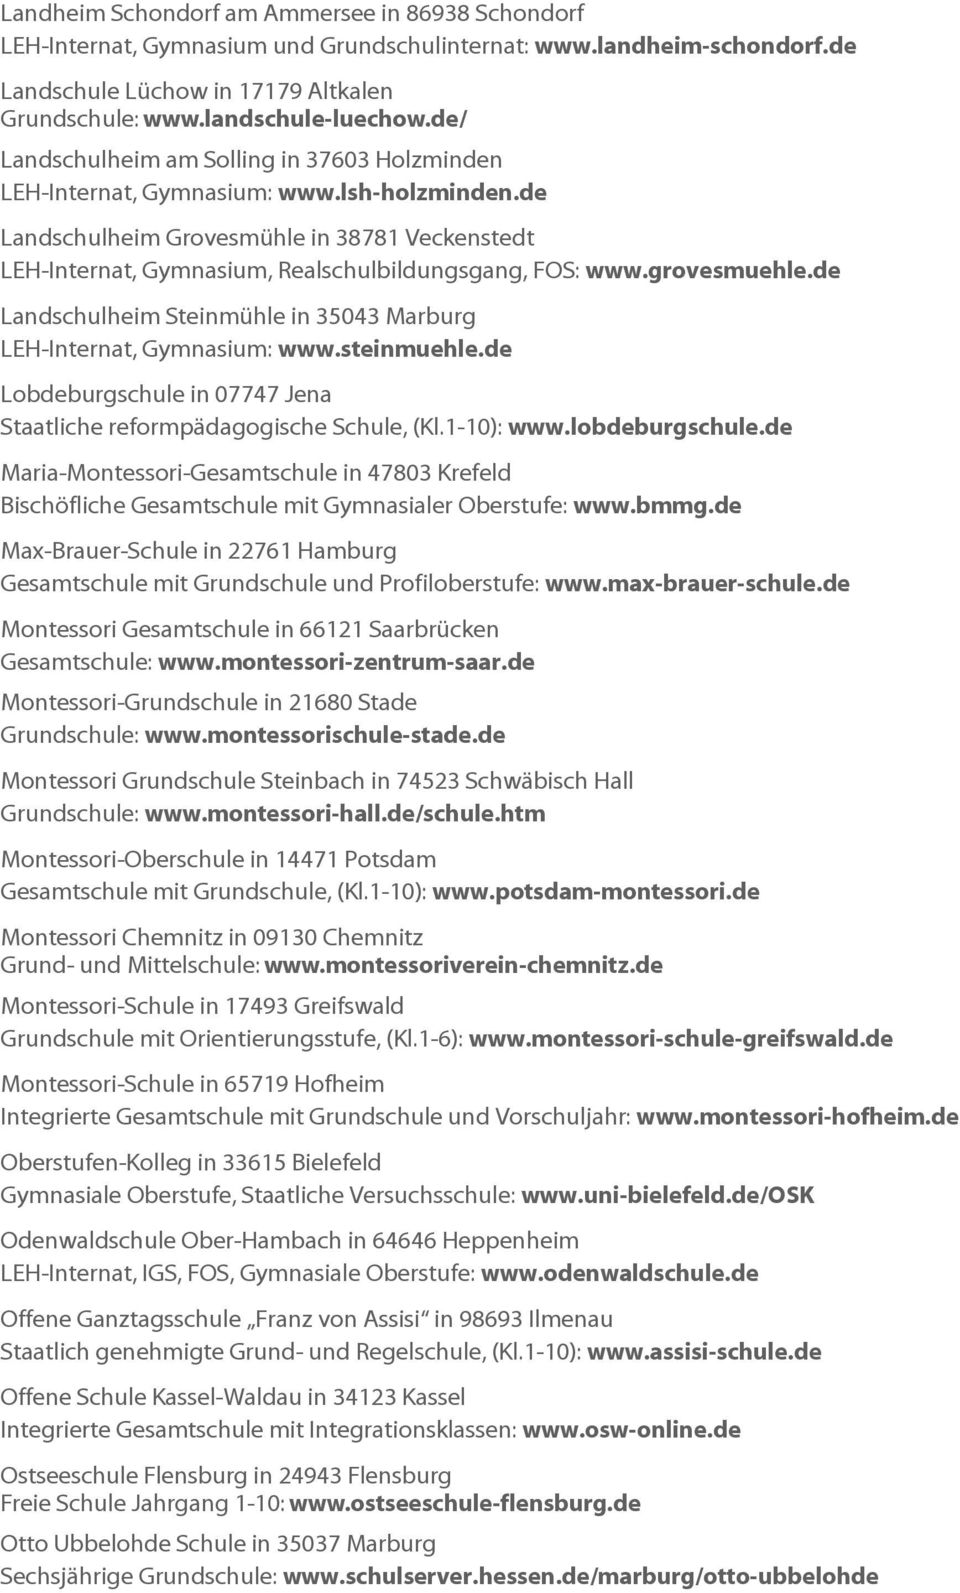 grovesmuehle.de Landschulheim Steinmühle in 35043 Marburg LEH-Internat, Gymnasium: www.steinmuehle.de Lobdeburgschule in 07747 Jena Staatliche reformpädagogische Schule, (Kl.1-10): www.